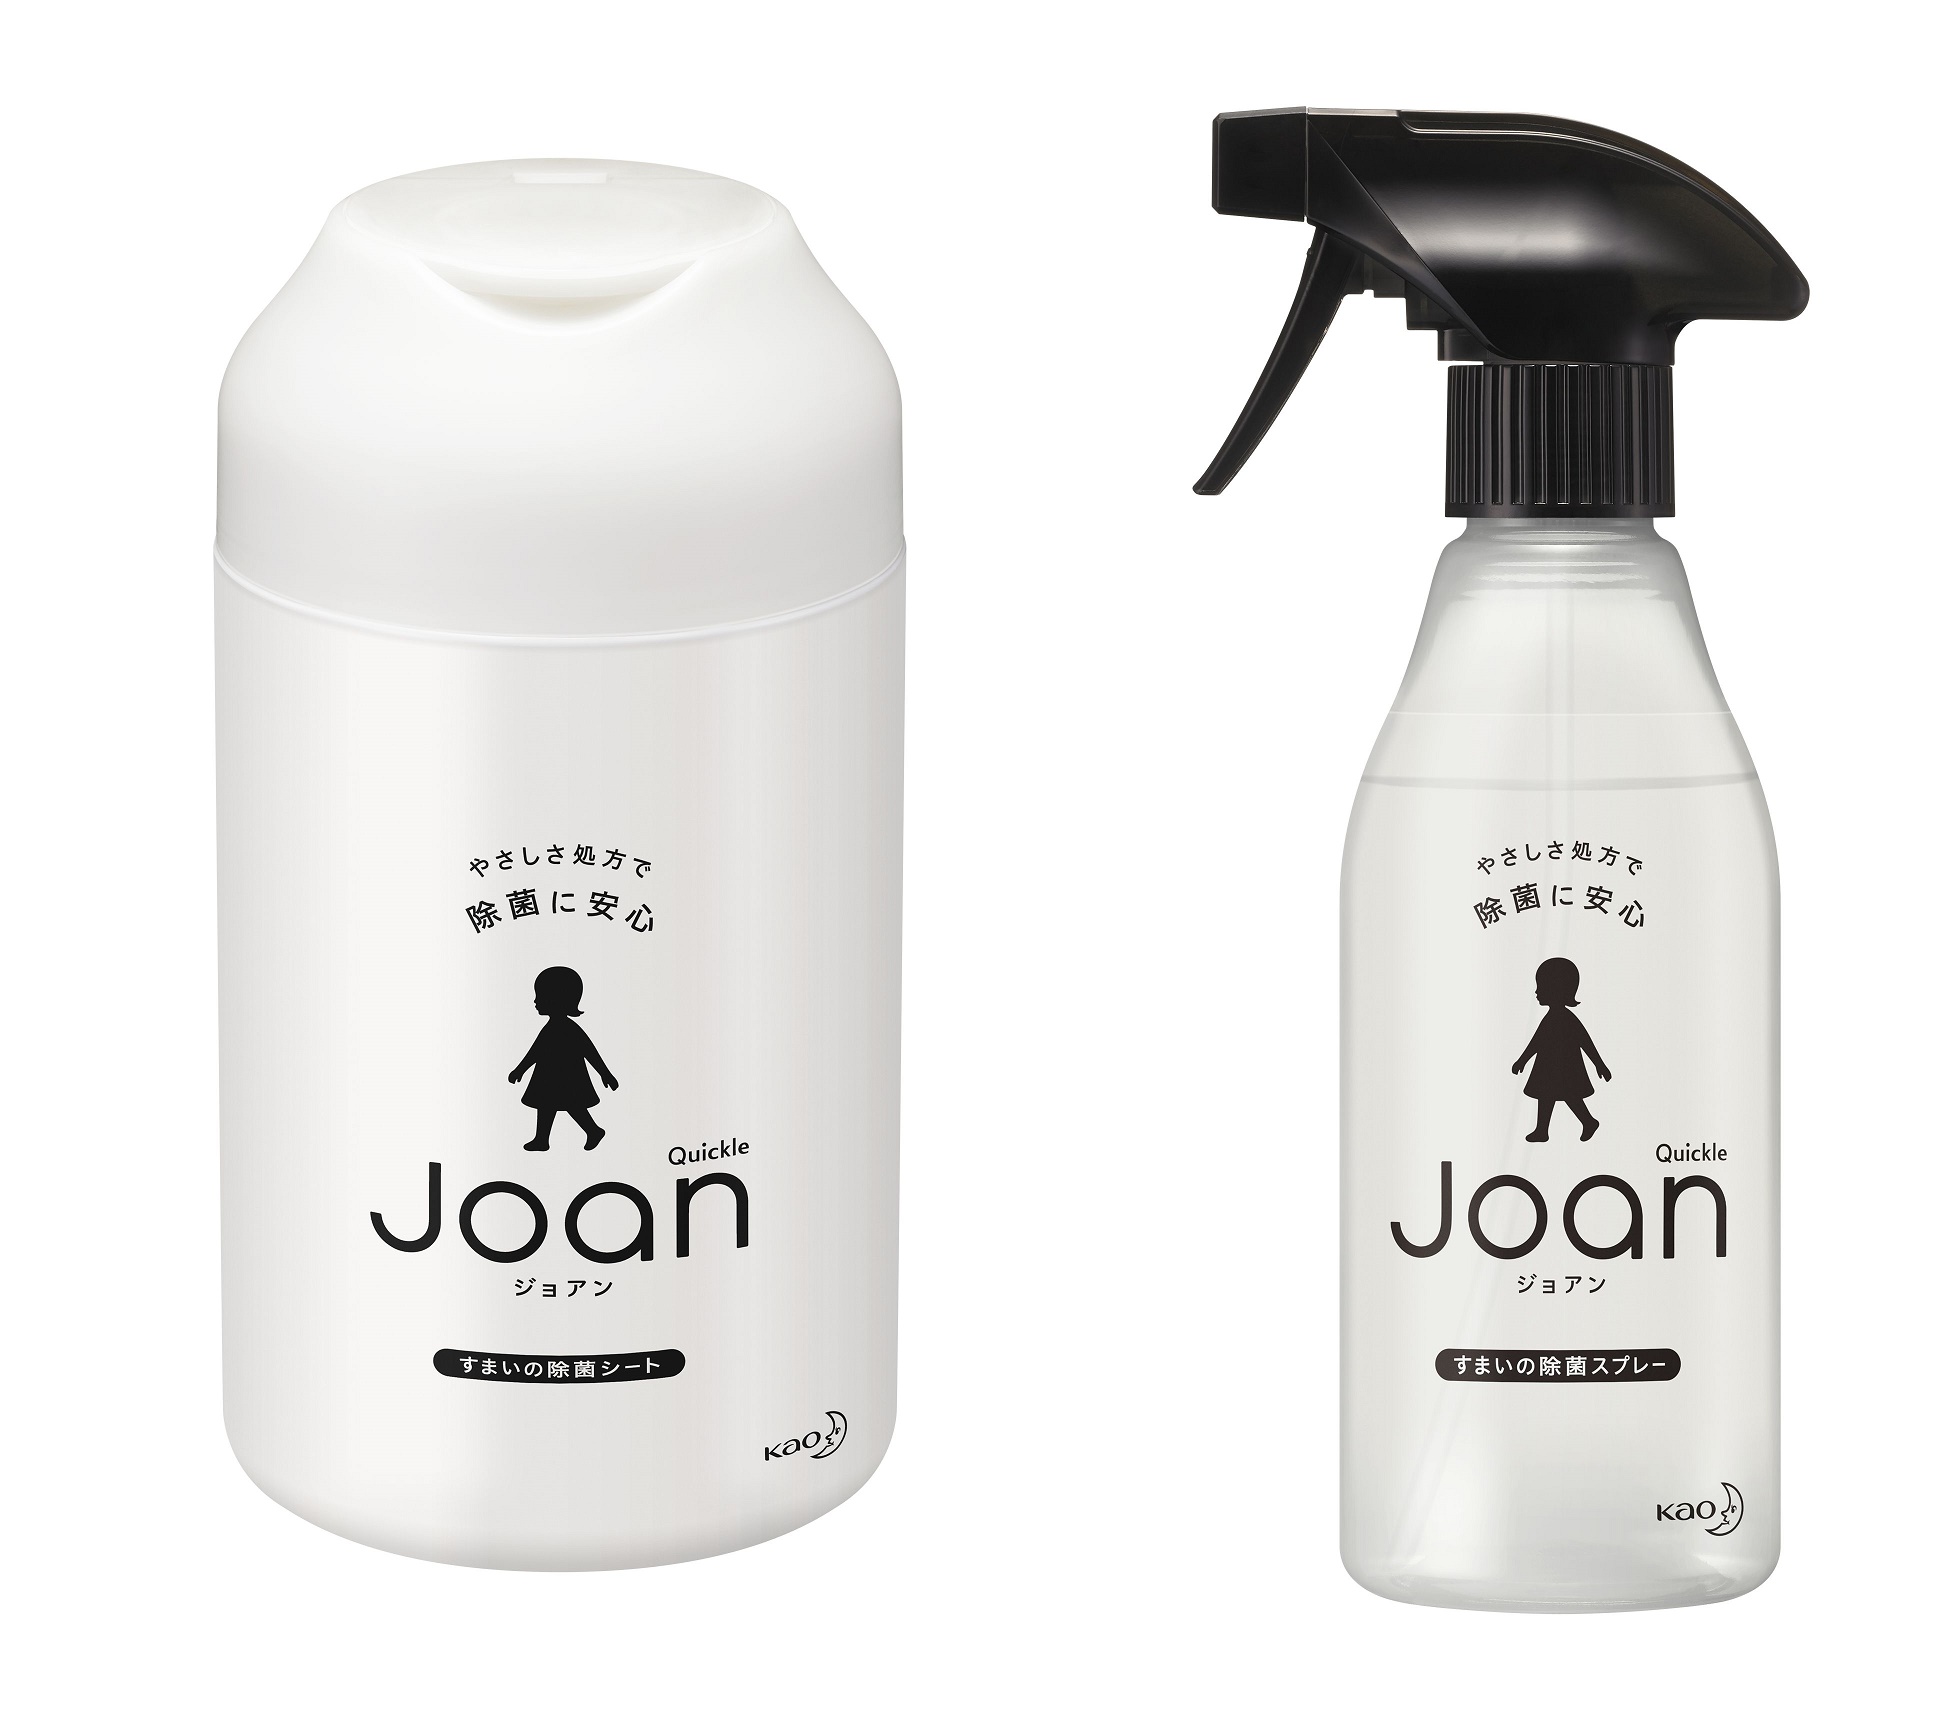 ●クイックル Joan(ジョアン) 除菌スプレー/除菌シート